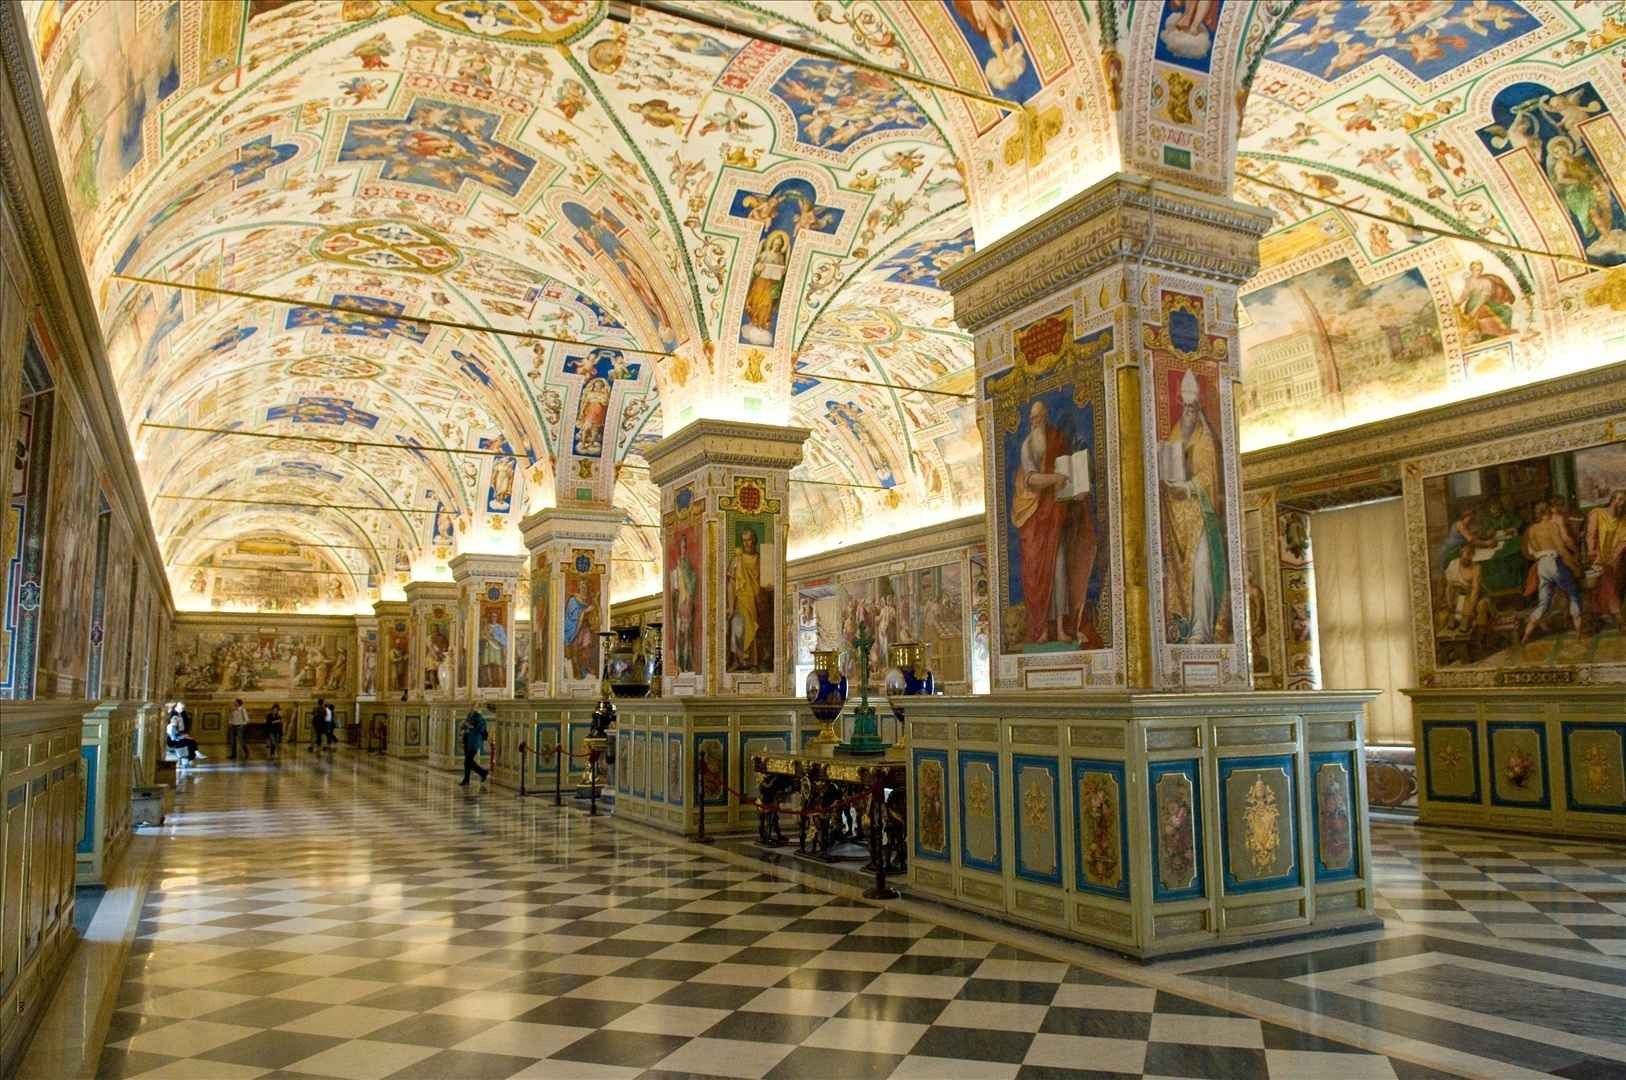 المتاحف في روما إيطاليا .. و أجمل 7 متاحف - The most famous museums in Rome Italy .. and the 7 most beautiful museums